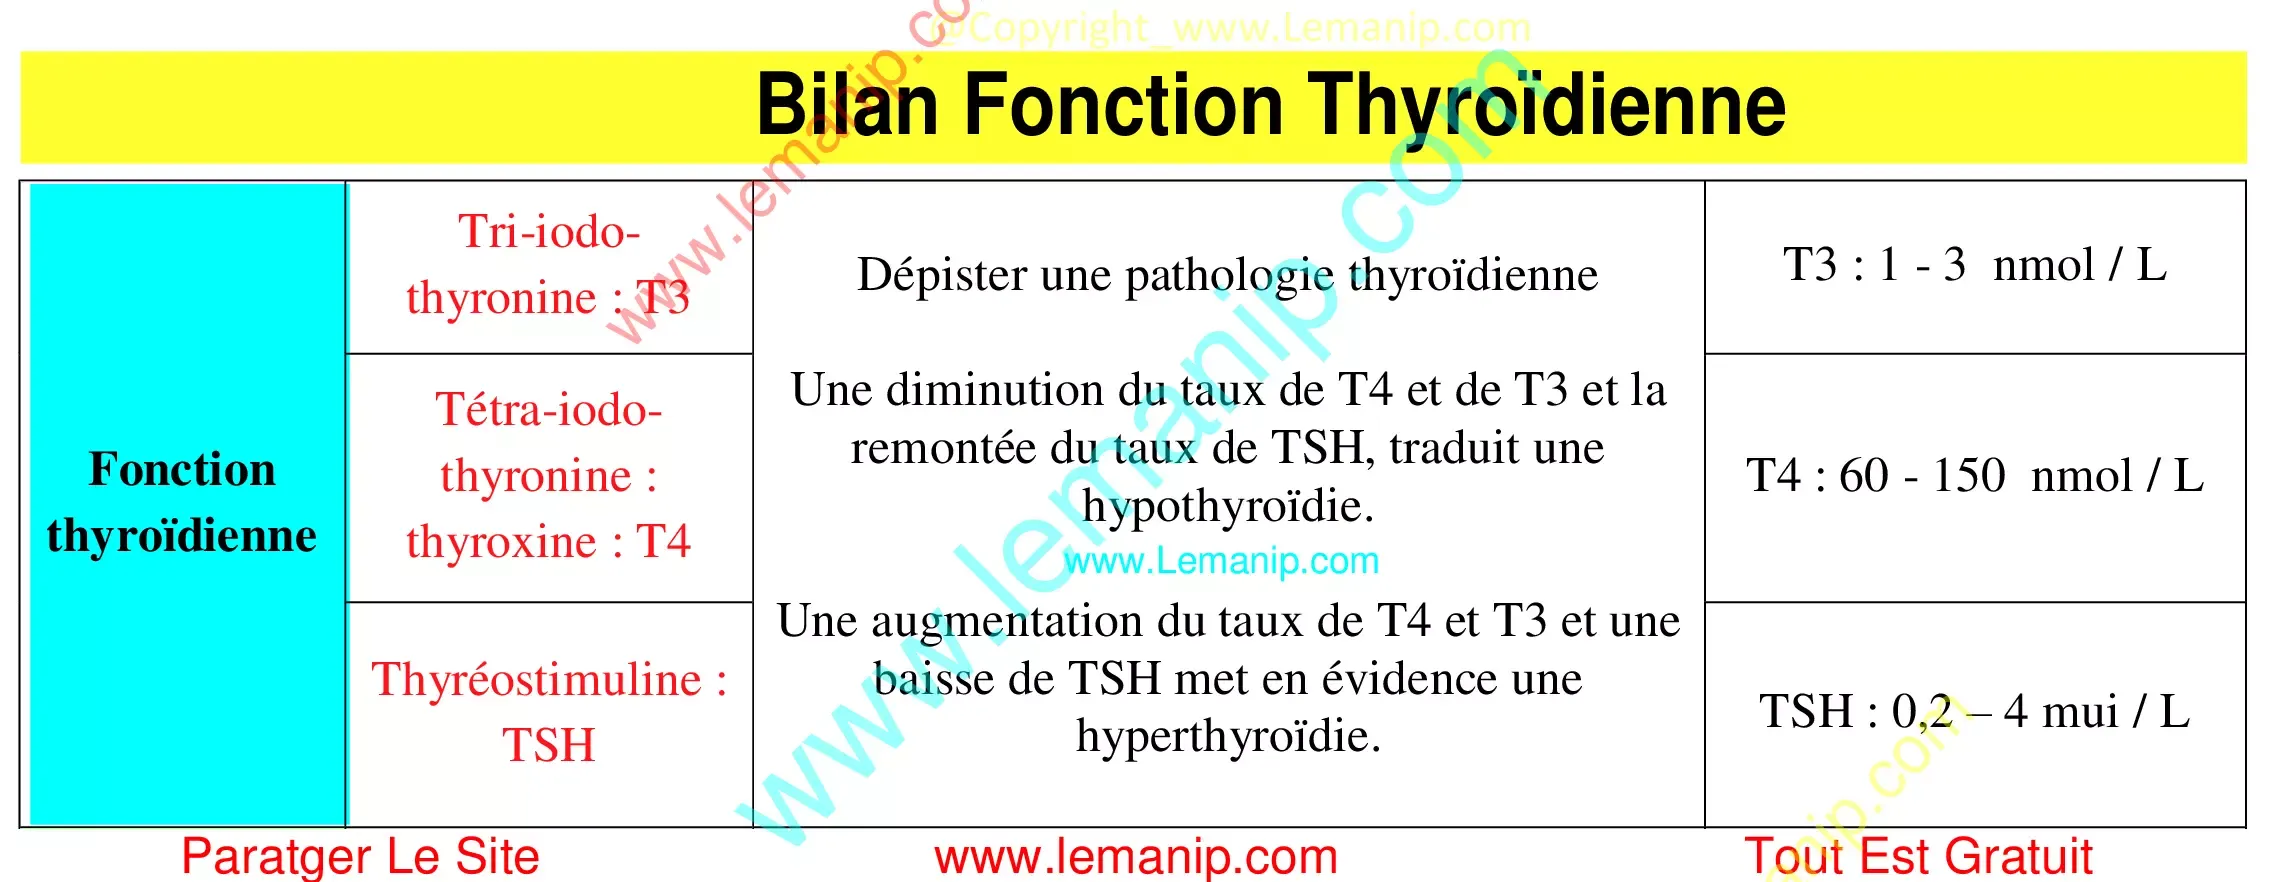 Bilan Fonction Thyroïdienne